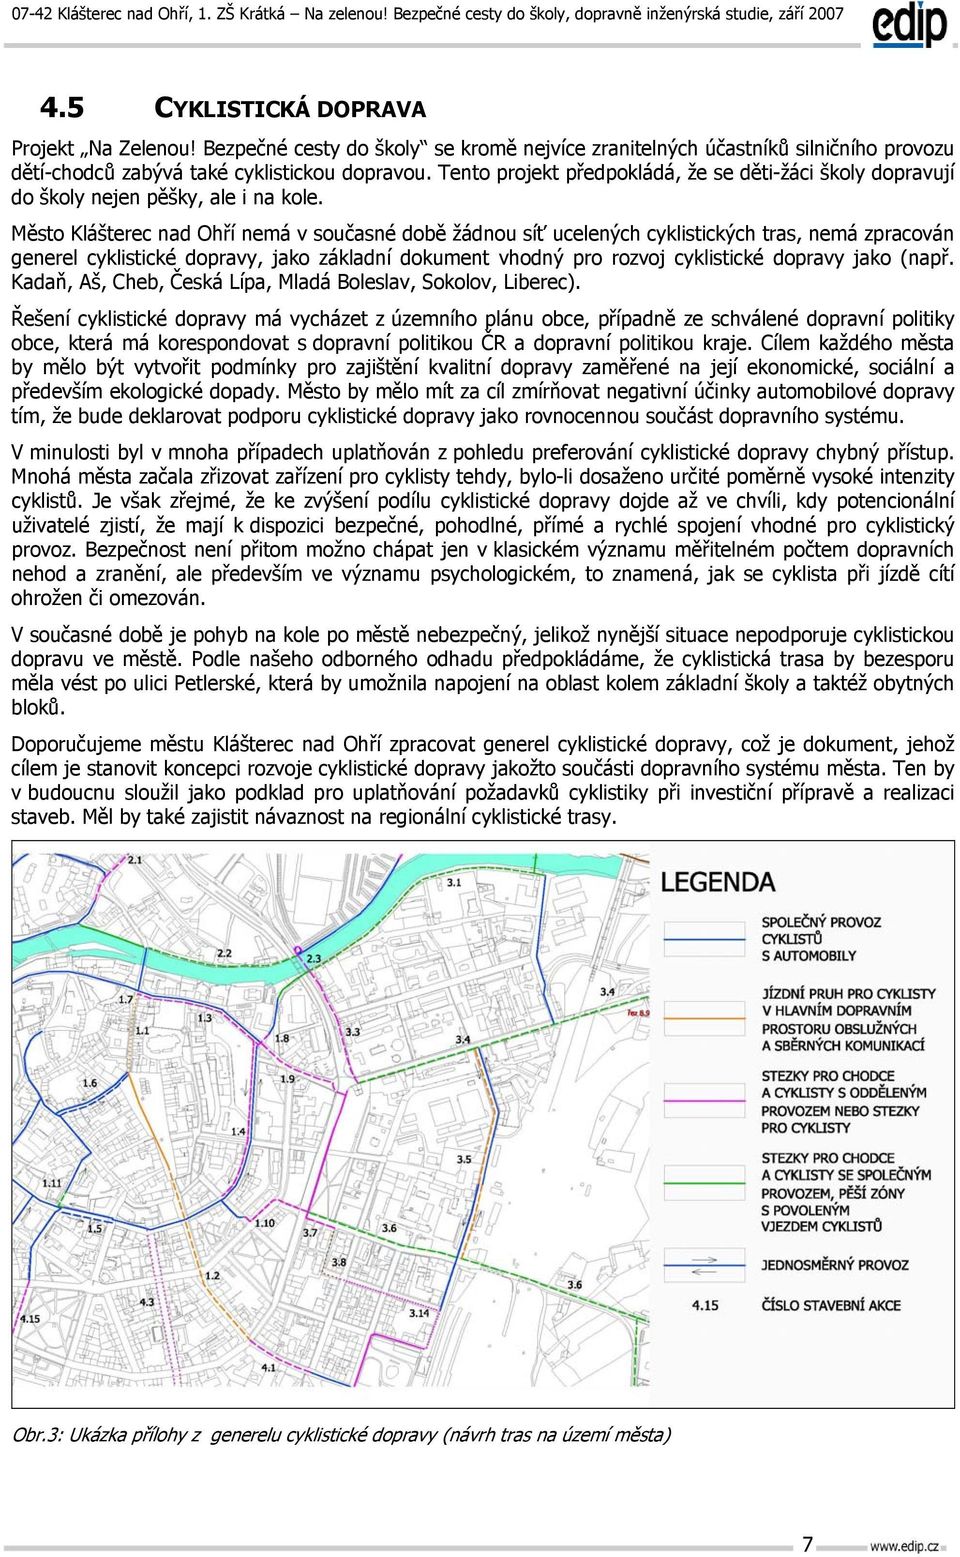 Město Klášterec nad Ohří nemá v současné době žádnou síť ucelených cyklistických tras, nemá zpracován generel cyklistické dopravy, jako základní dokument vhodný pro rozvoj cyklistické dopravy jako